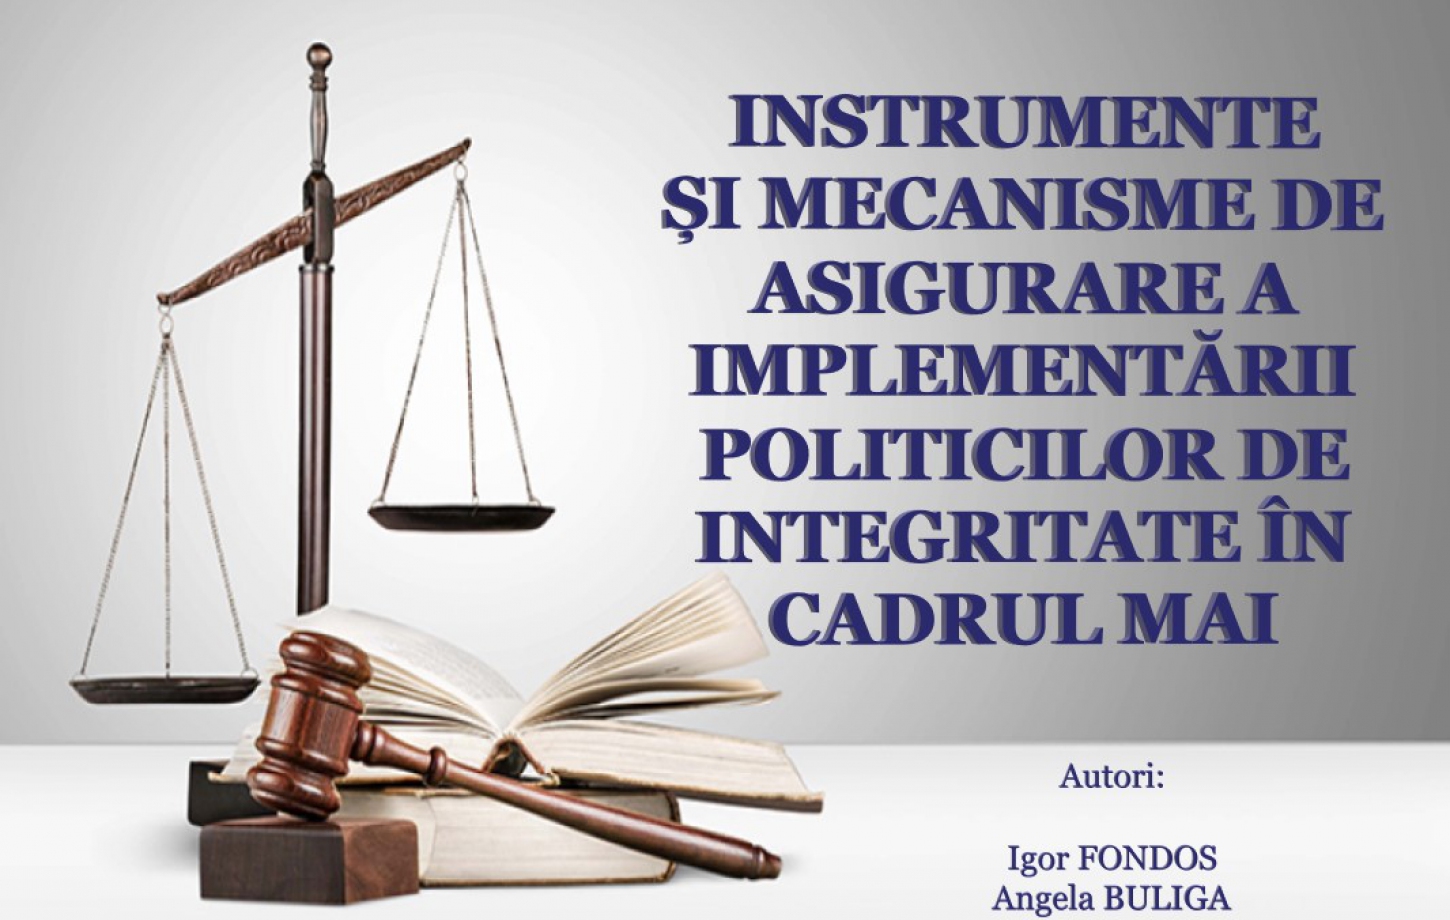 Cercetare: Instrumente și mecanisme de asigurare a implementării politicilor de integritate în cadrul MAI